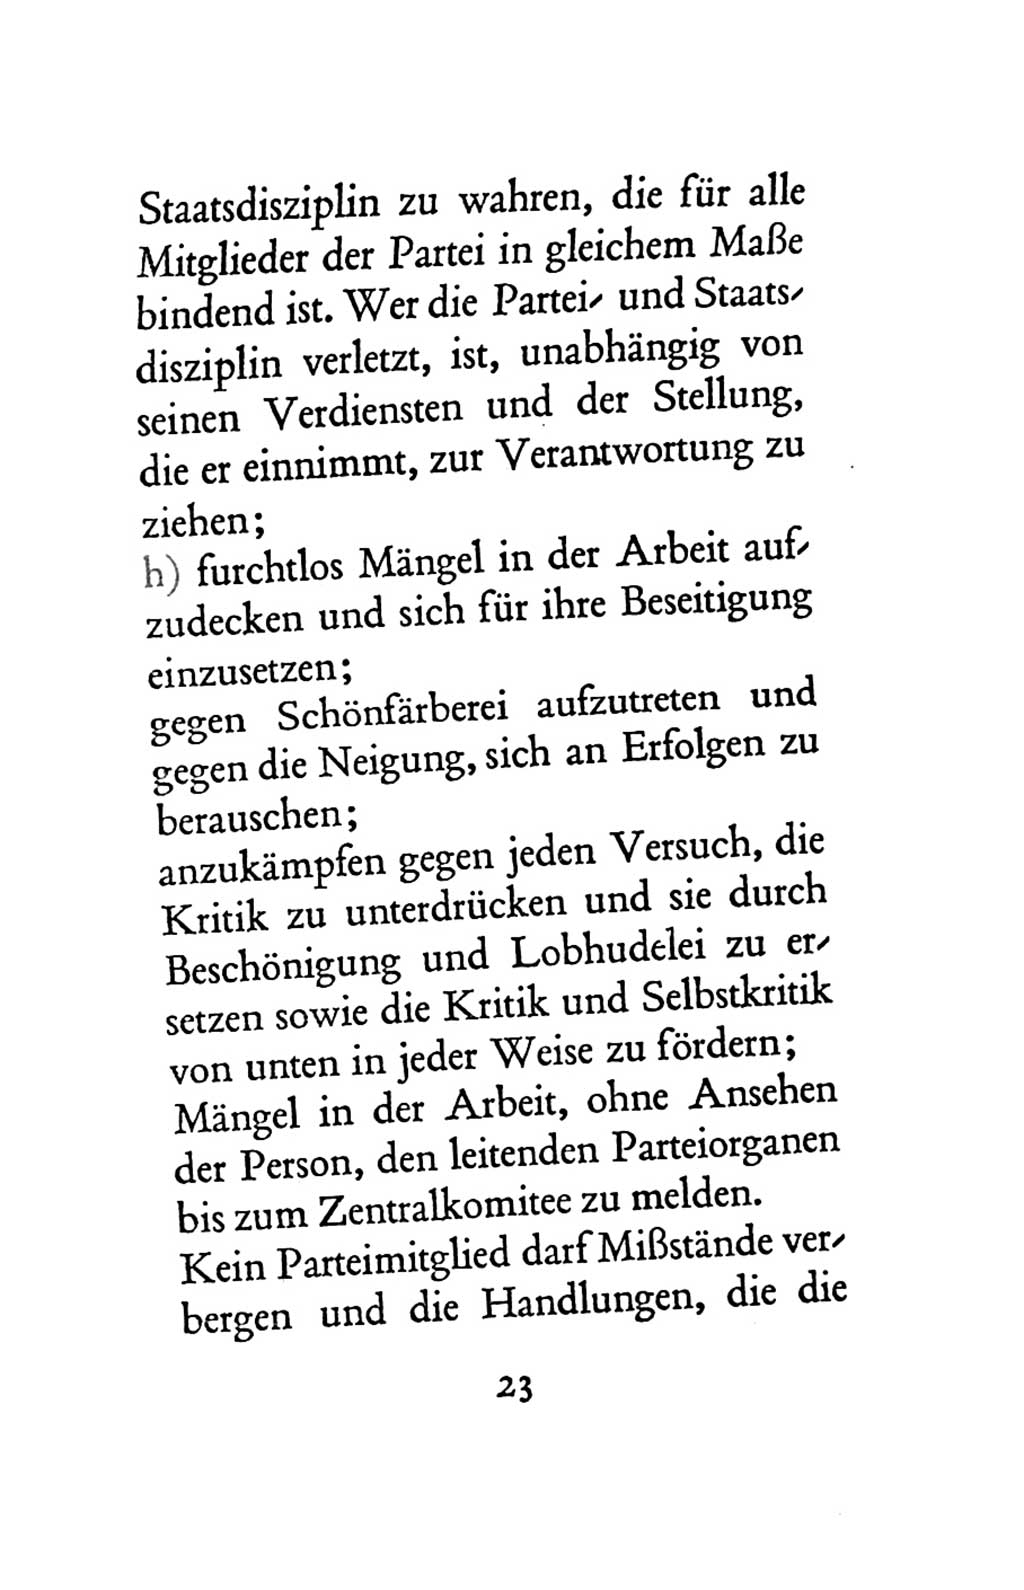 Statut der Sozialistischen Einheitspartei Deutschlands (SED) 1963, Seite 23 (St. SED DDR 1963, S. 23)